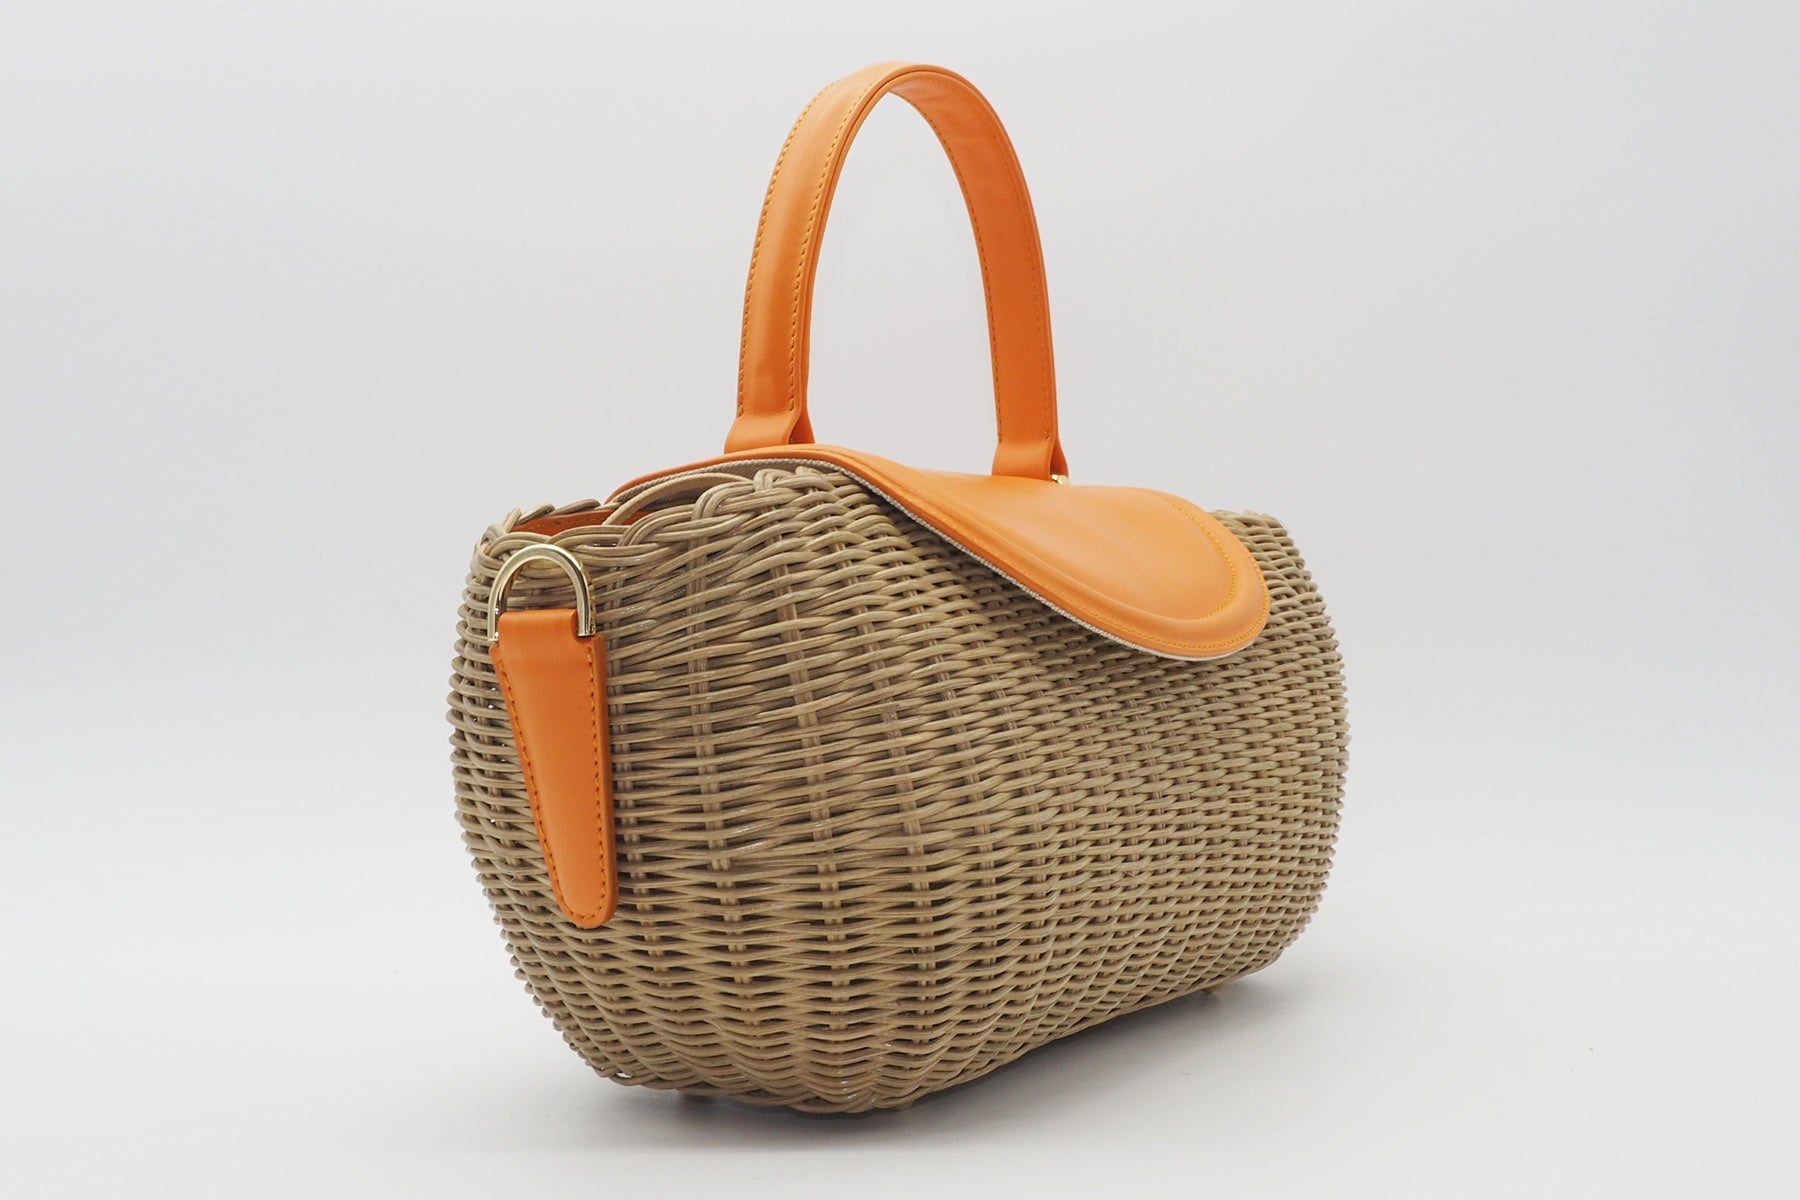 Korbtasche aus handgeflochtener Weide in Natur mit Überschlag aus Leder in Orange Taschen Crossbody & Schultertaschen Capaf 